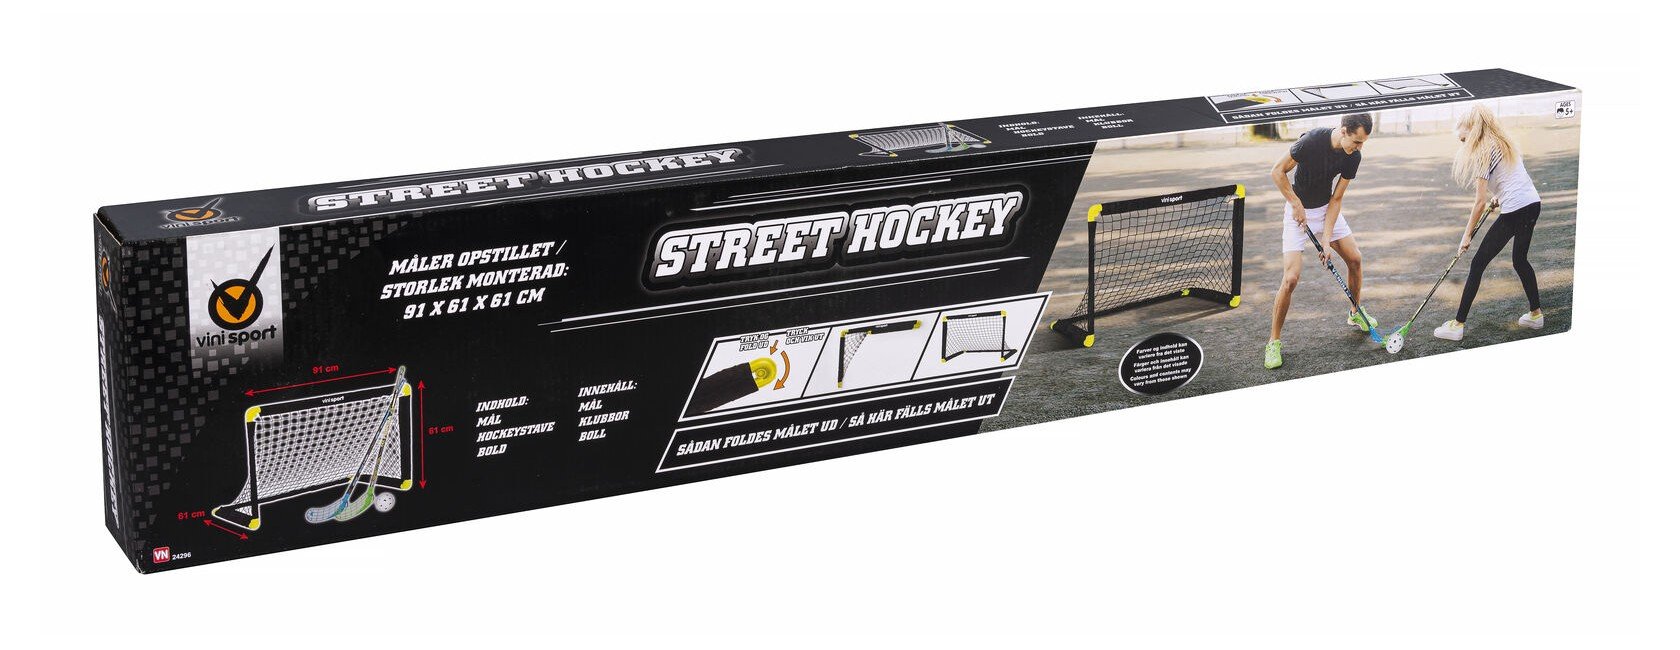 Vini - Street Hockey Set (24296)